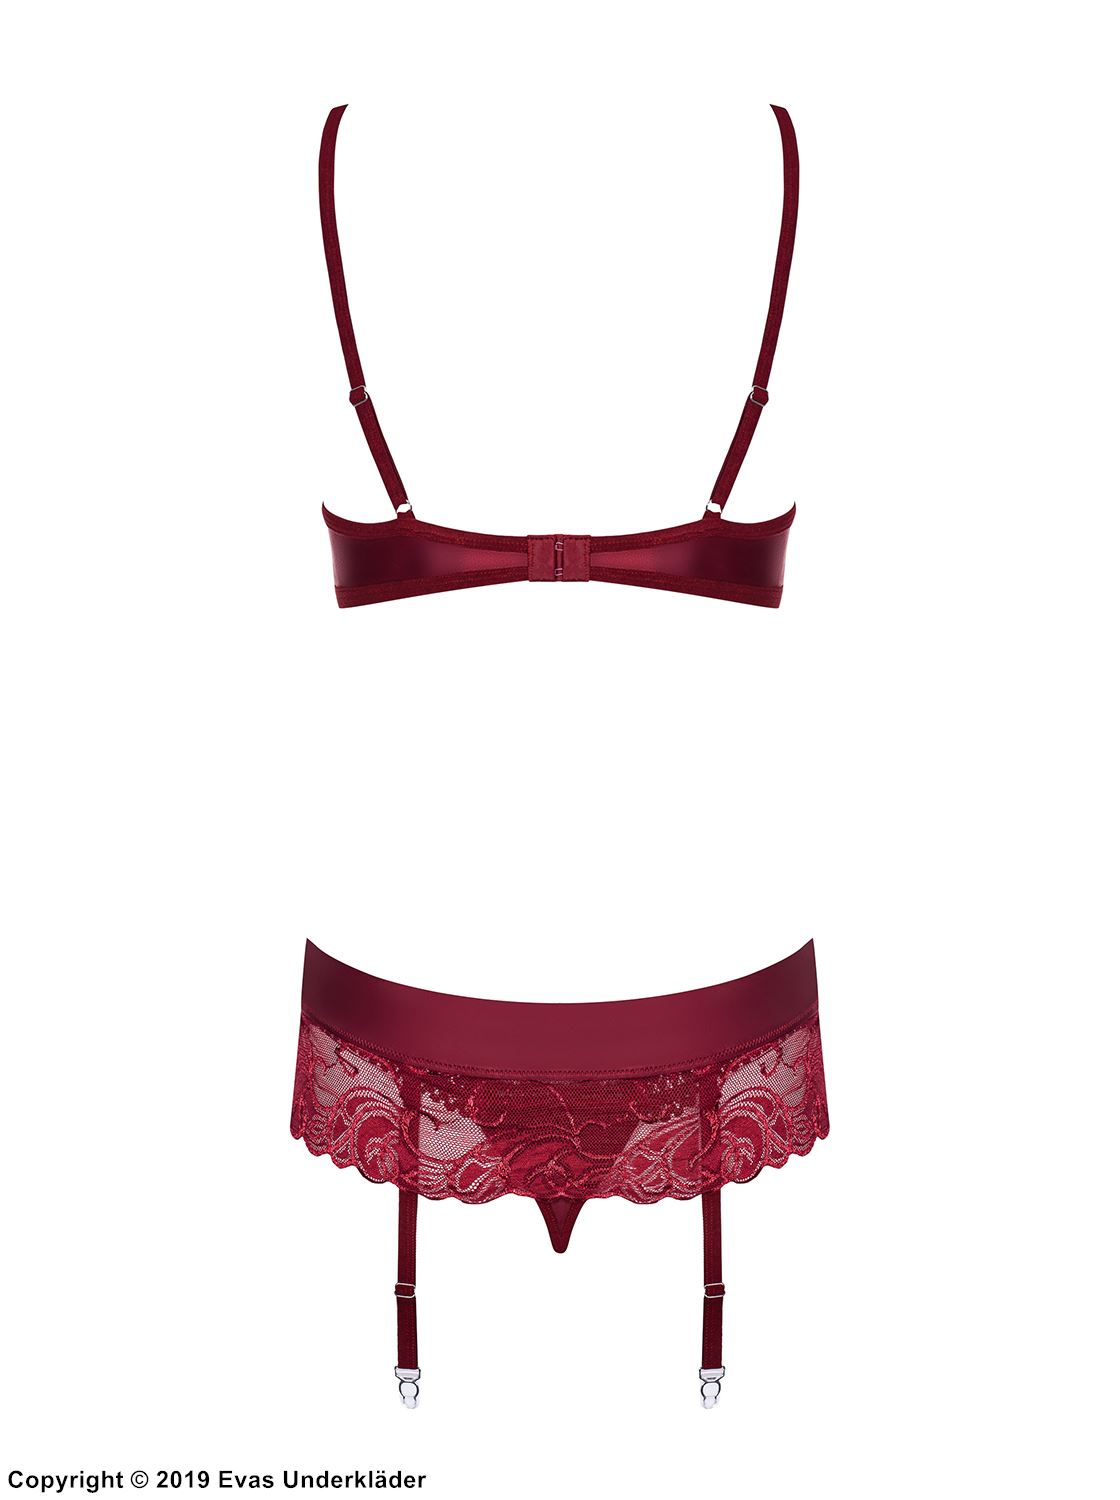 Lingerie set, straps over bust, lace cups, garter belt